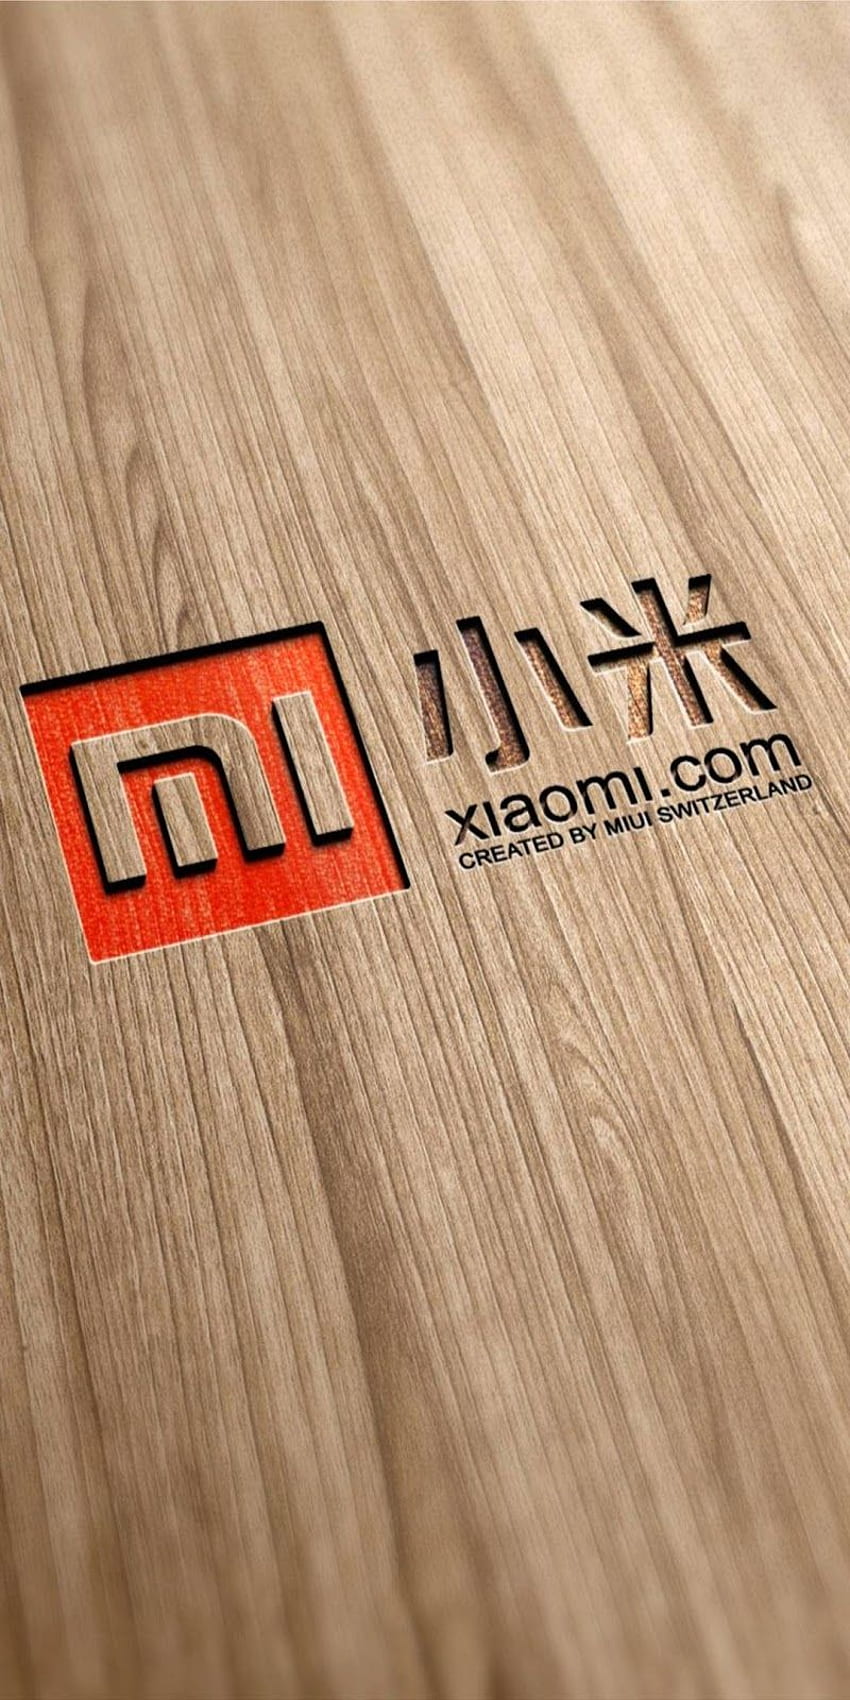 Logotipo del teléfono Xiomi - Mi logotipo, logotipo de Xiaomi fondo de pantalla del teléfono